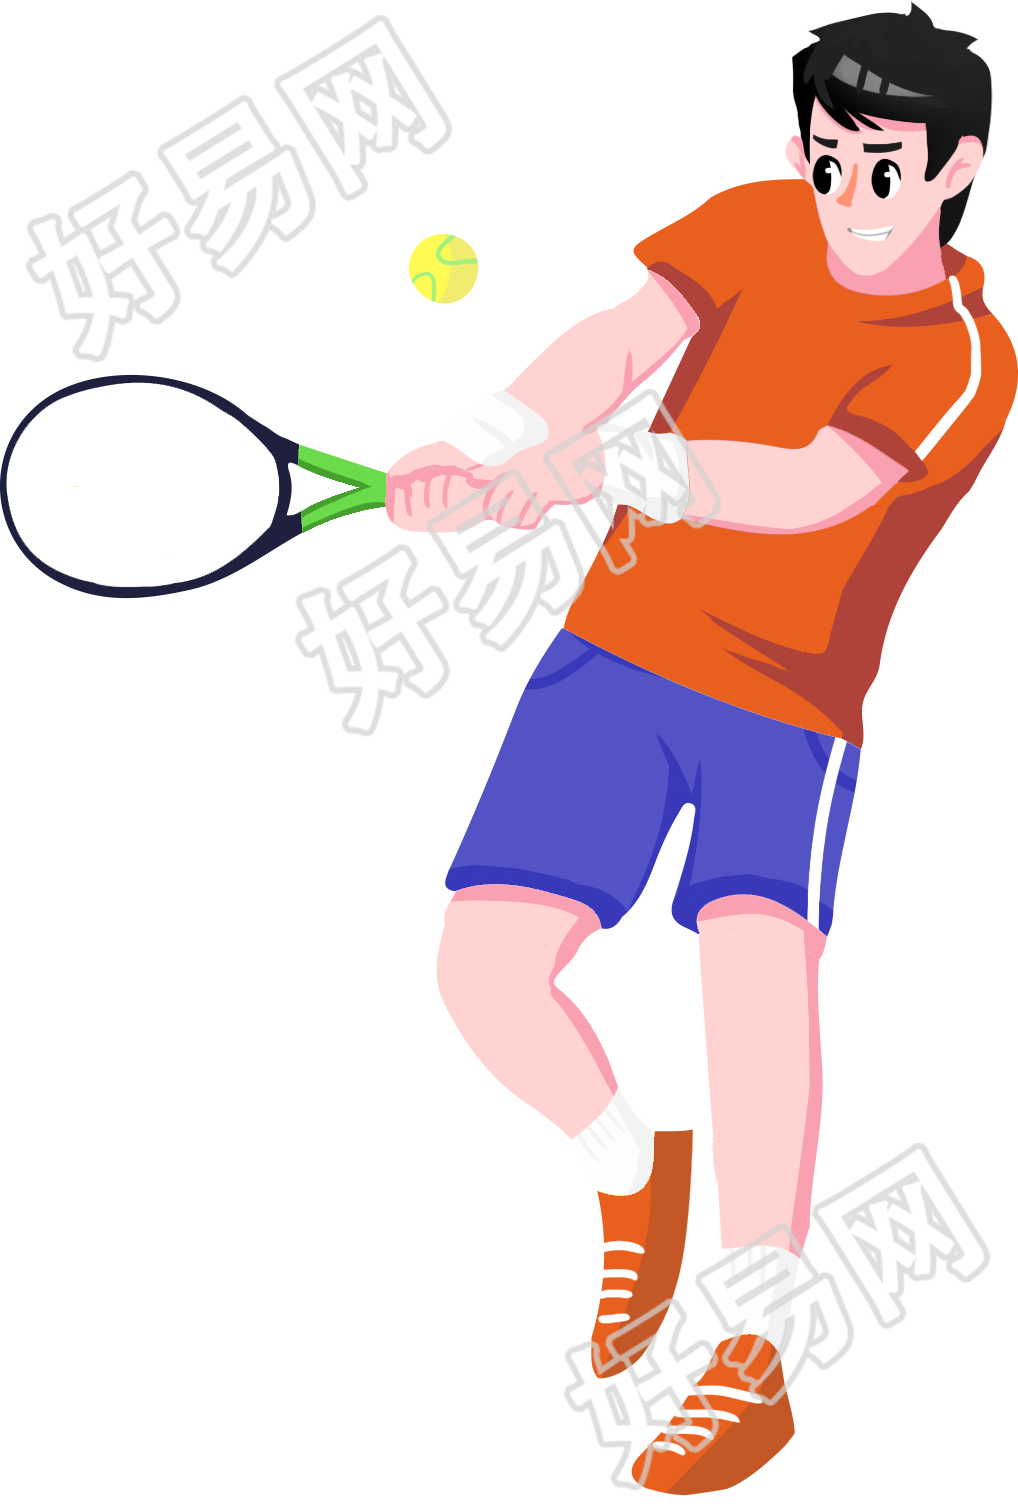 打网球/体育运动